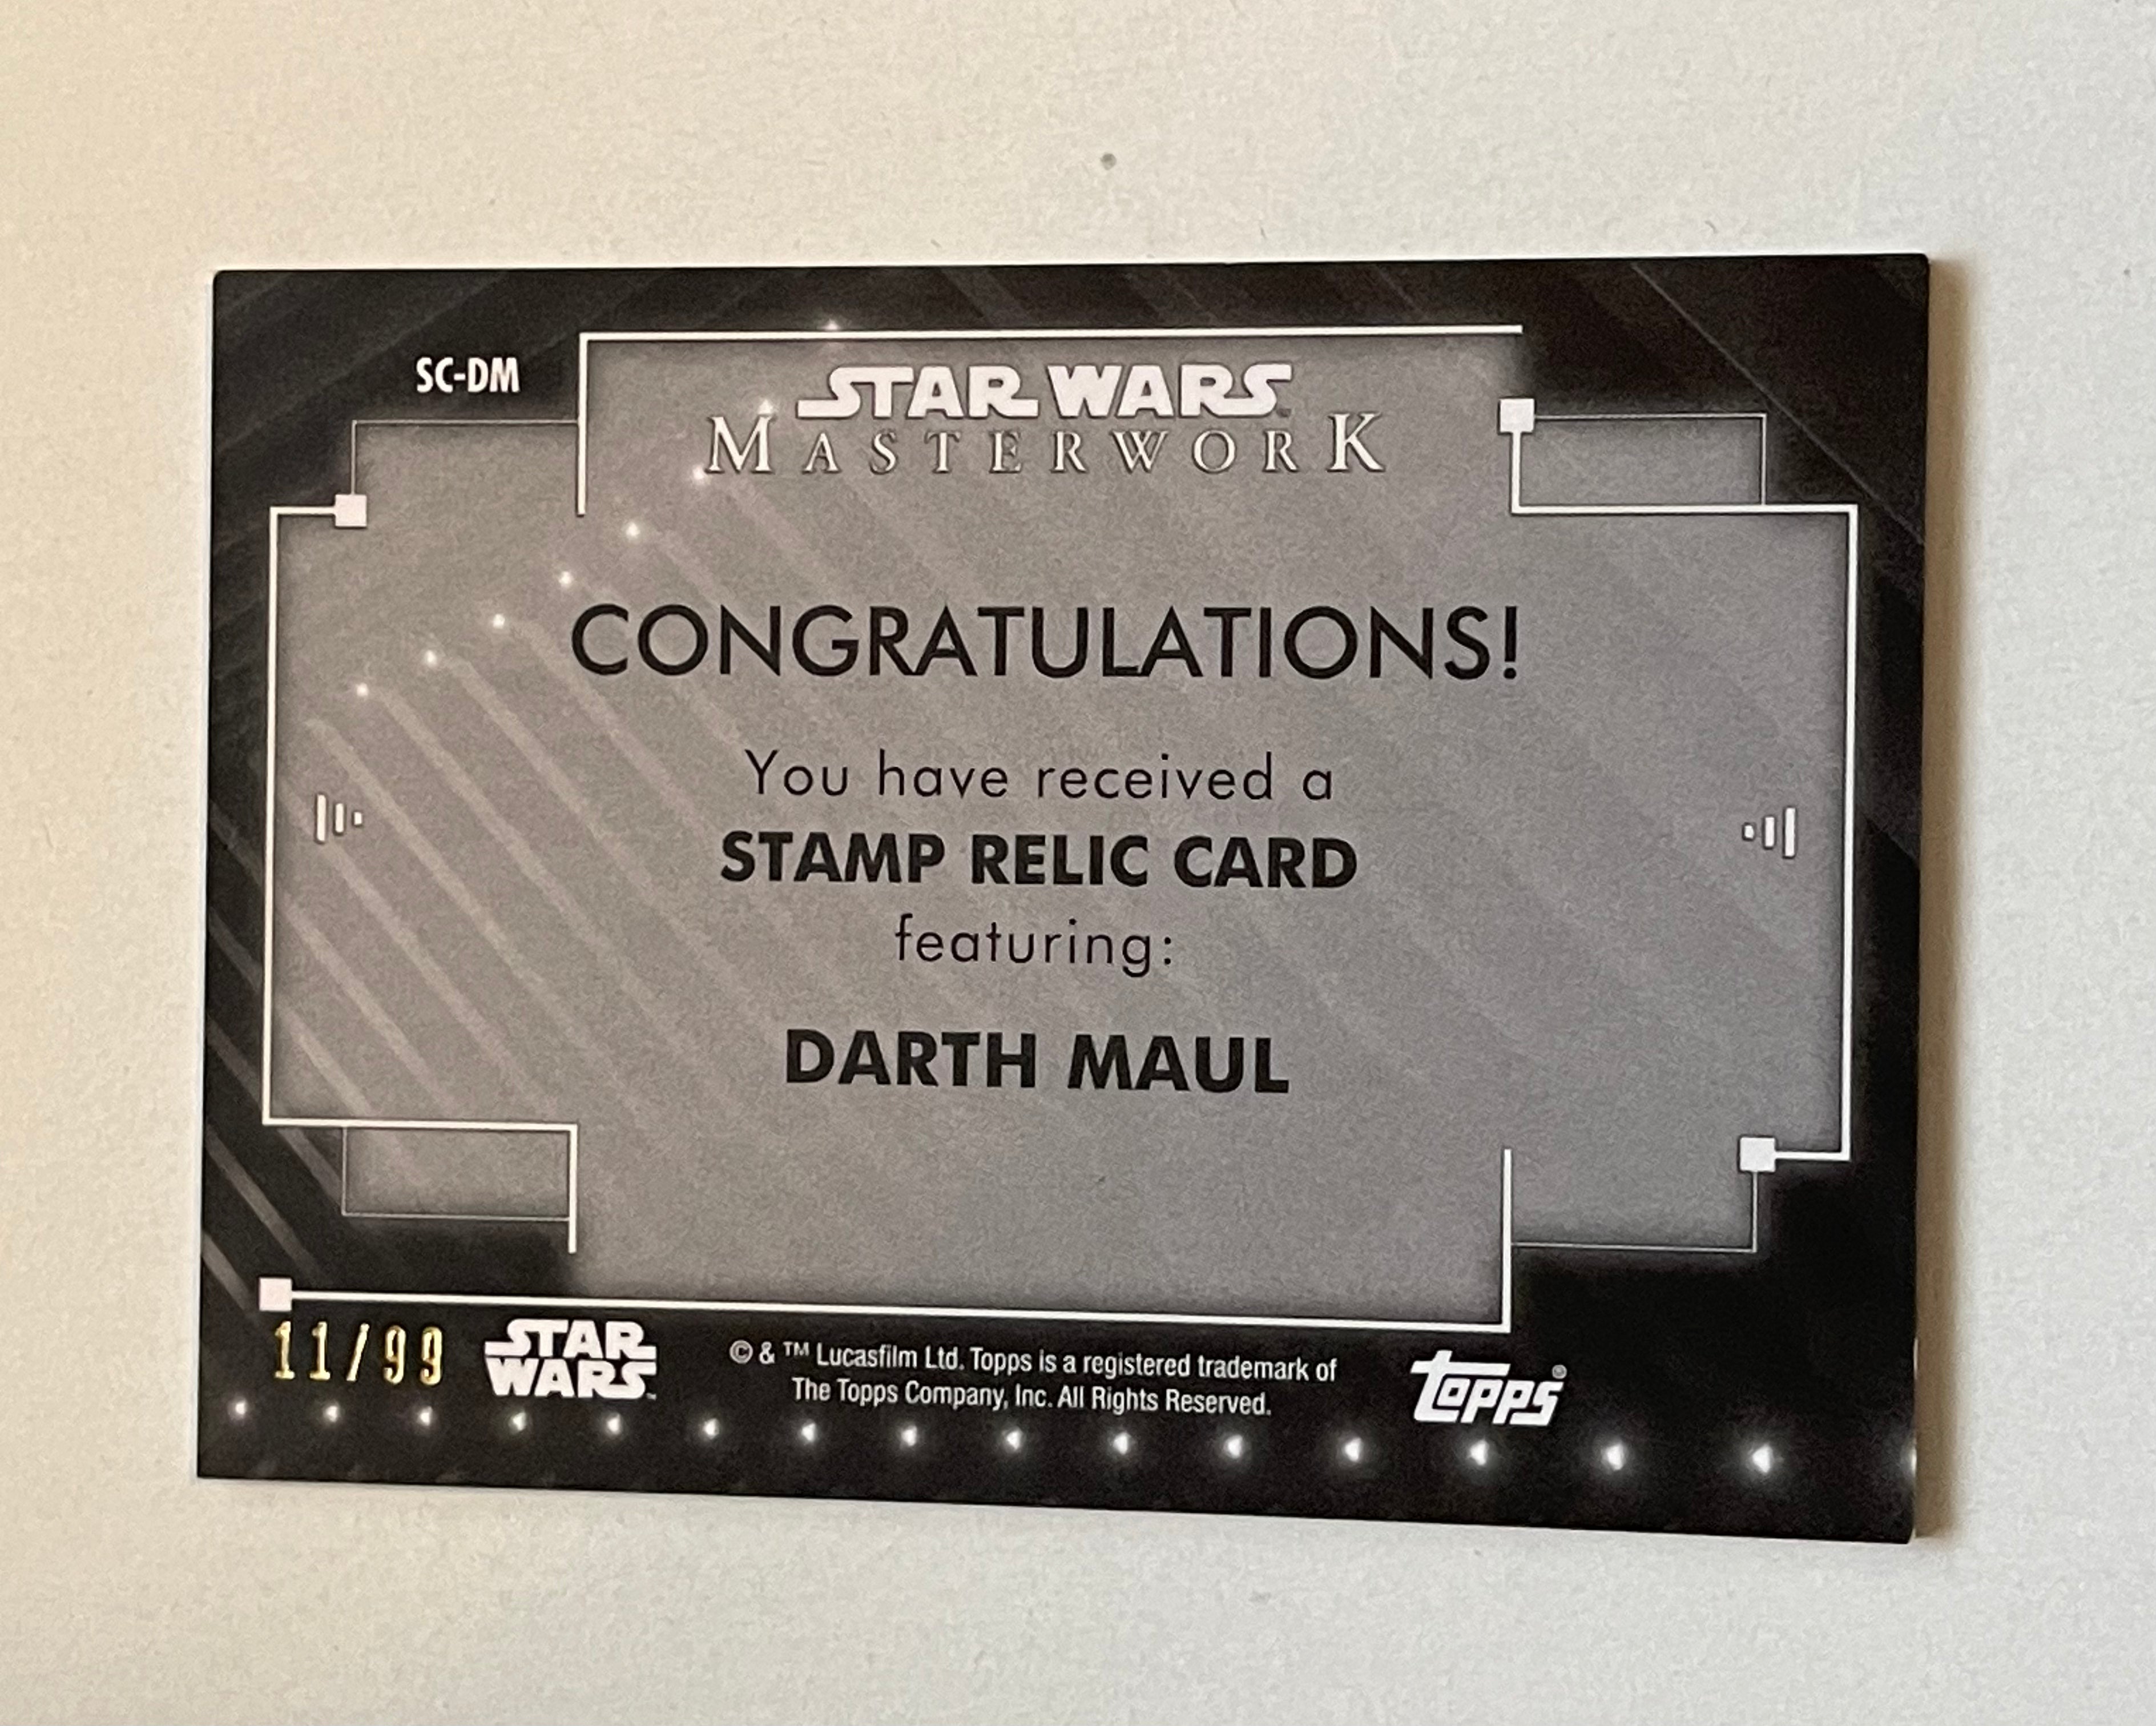 Star Wars Darth Maul rare stamp insert card!